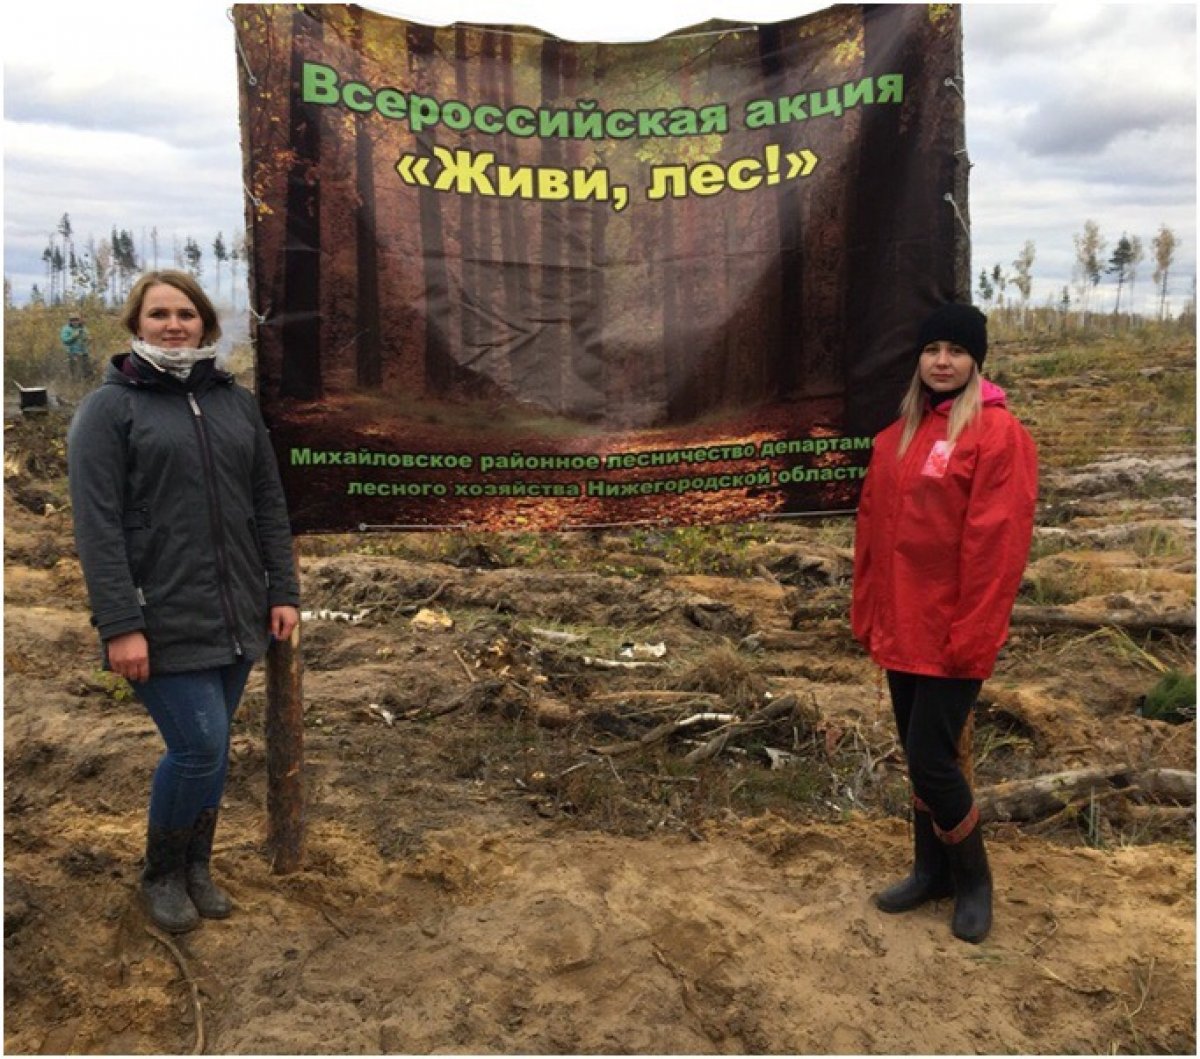 5 октября 2018 года в Михайловском районном лесничестве в рамках Всероссийской акции "Живи лес!" прошло мероприятие по посадке леса